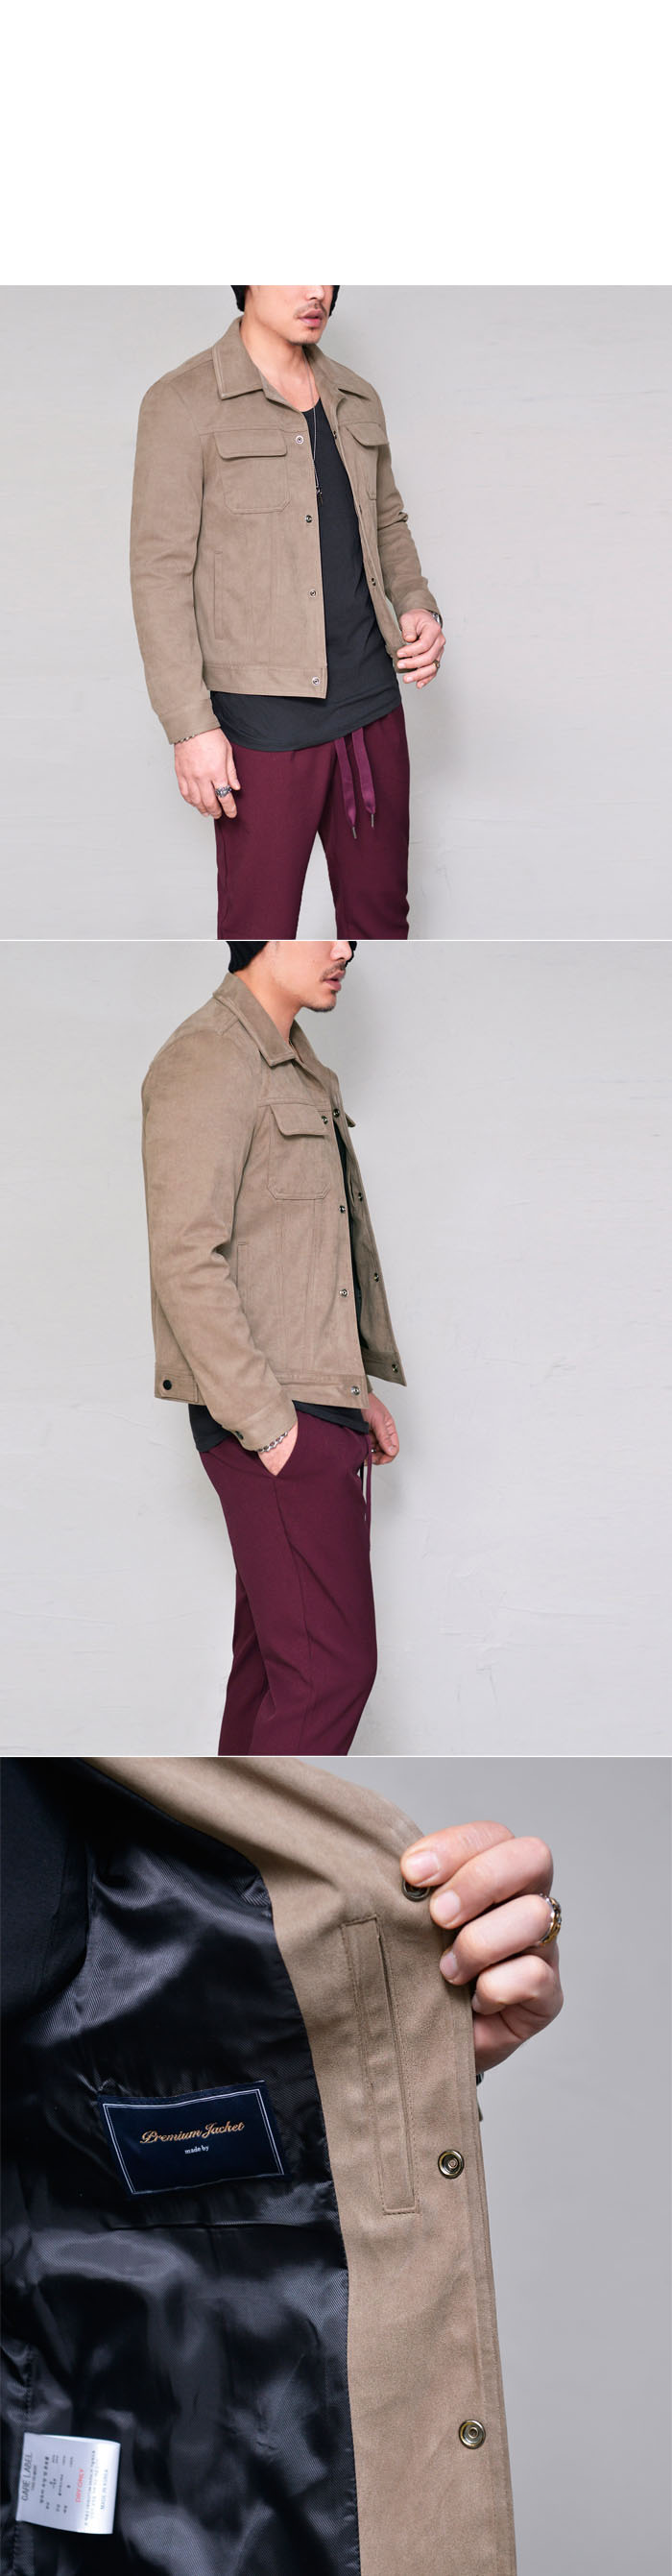 Sales :: Tops :: Suede Urban Slim Button Up-Jacket 299 - GUYLOOK Men's ...